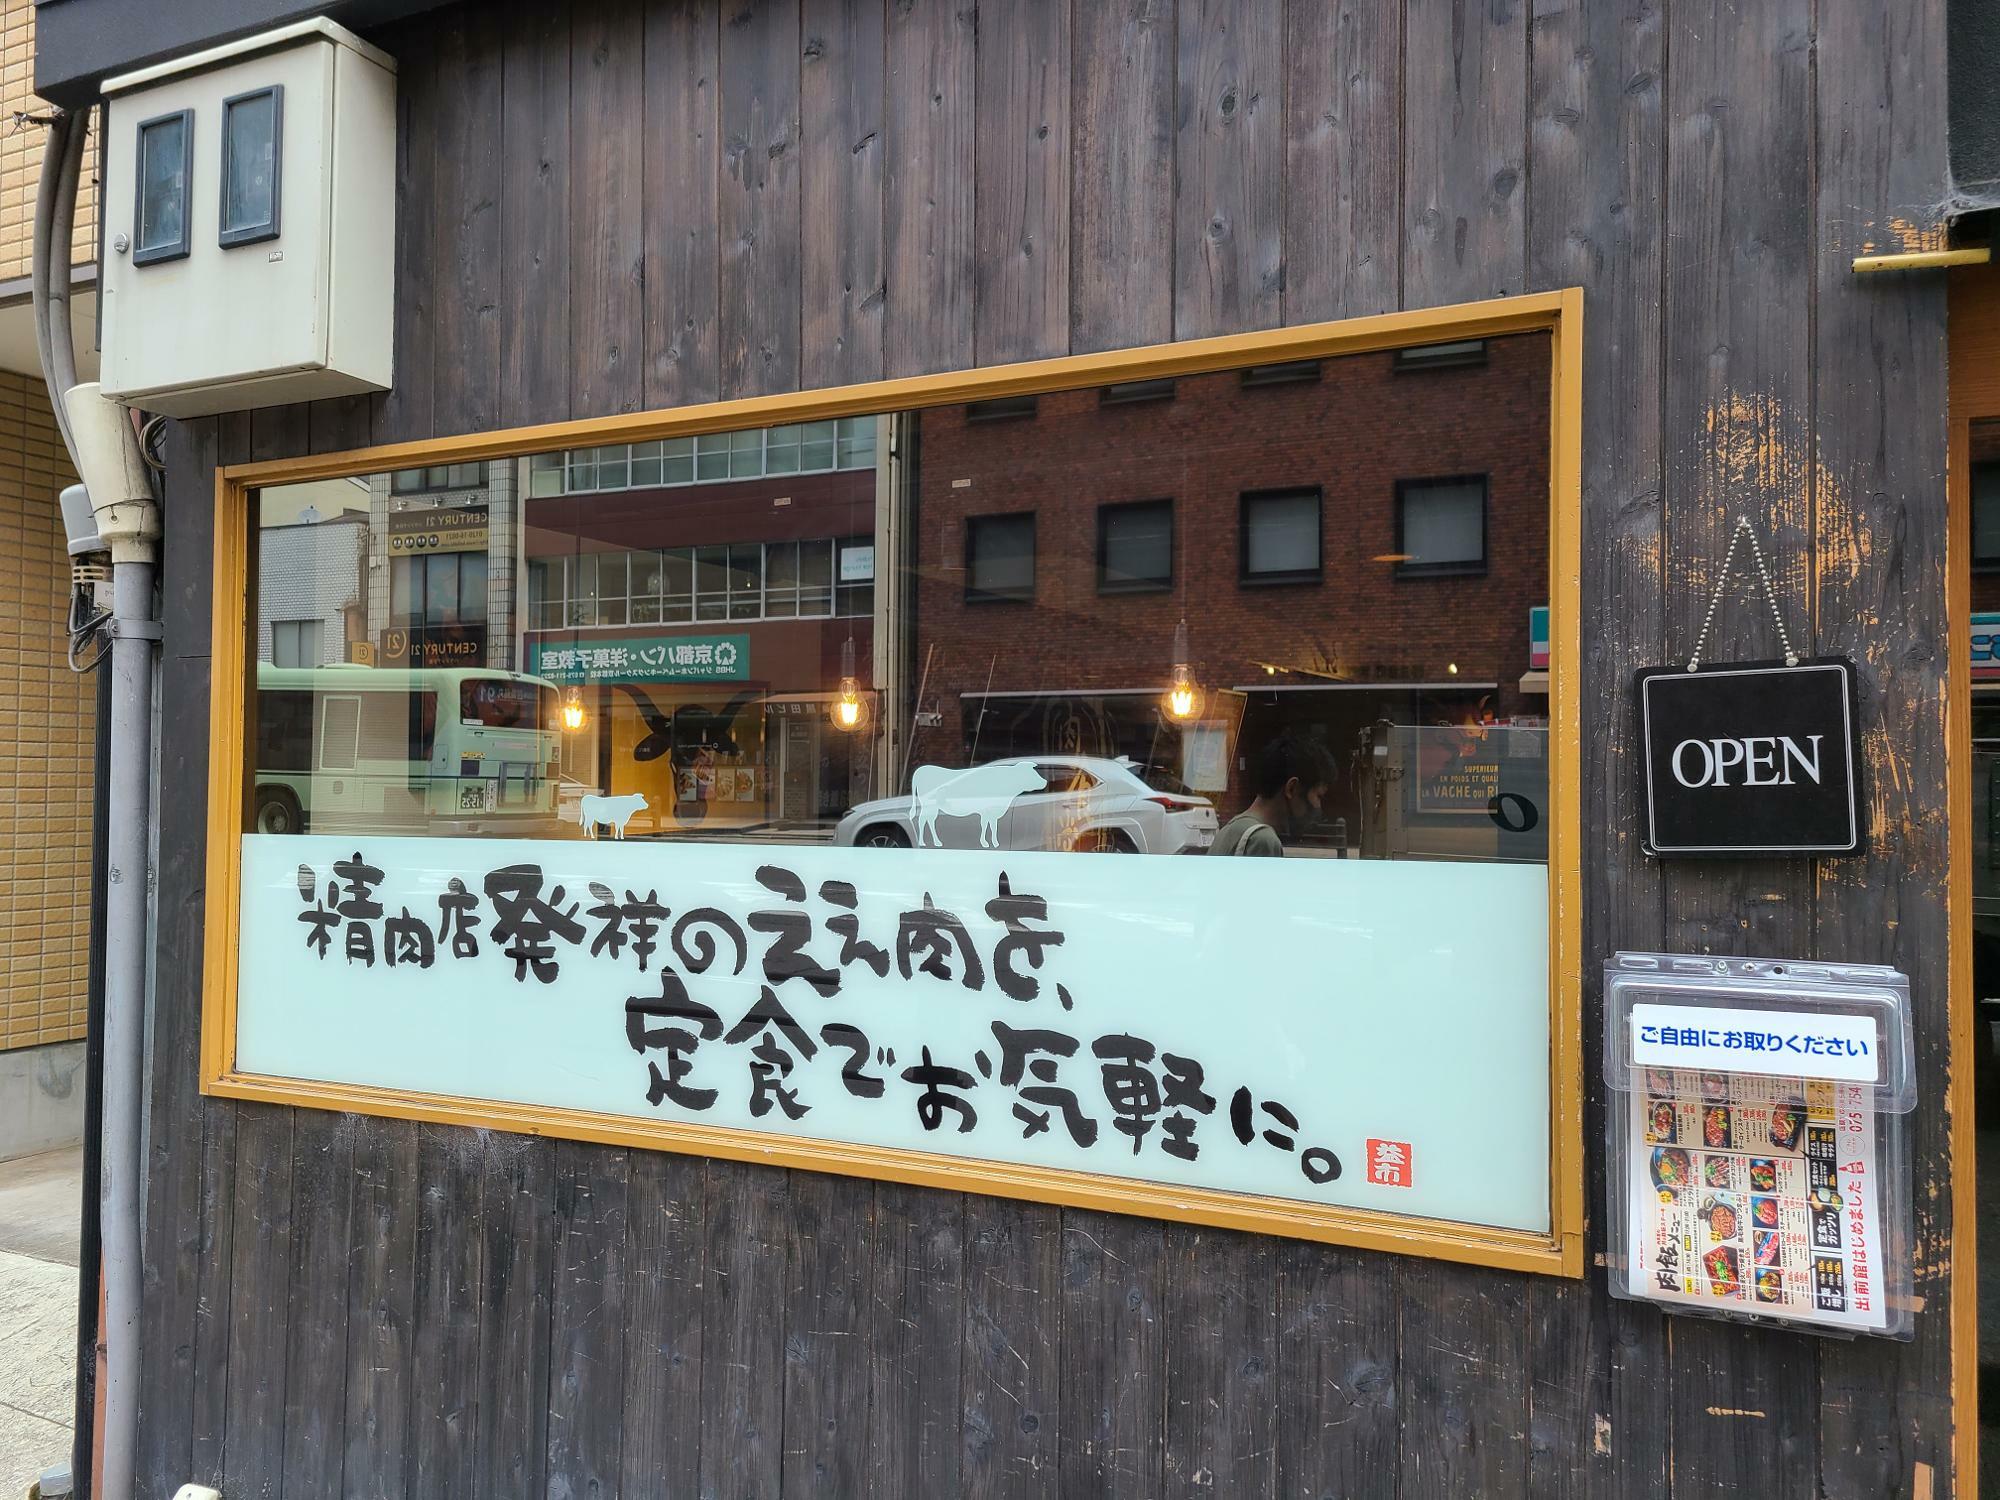 京都肉食堂本店は四条堀川の西側行きバス停の前にあります。